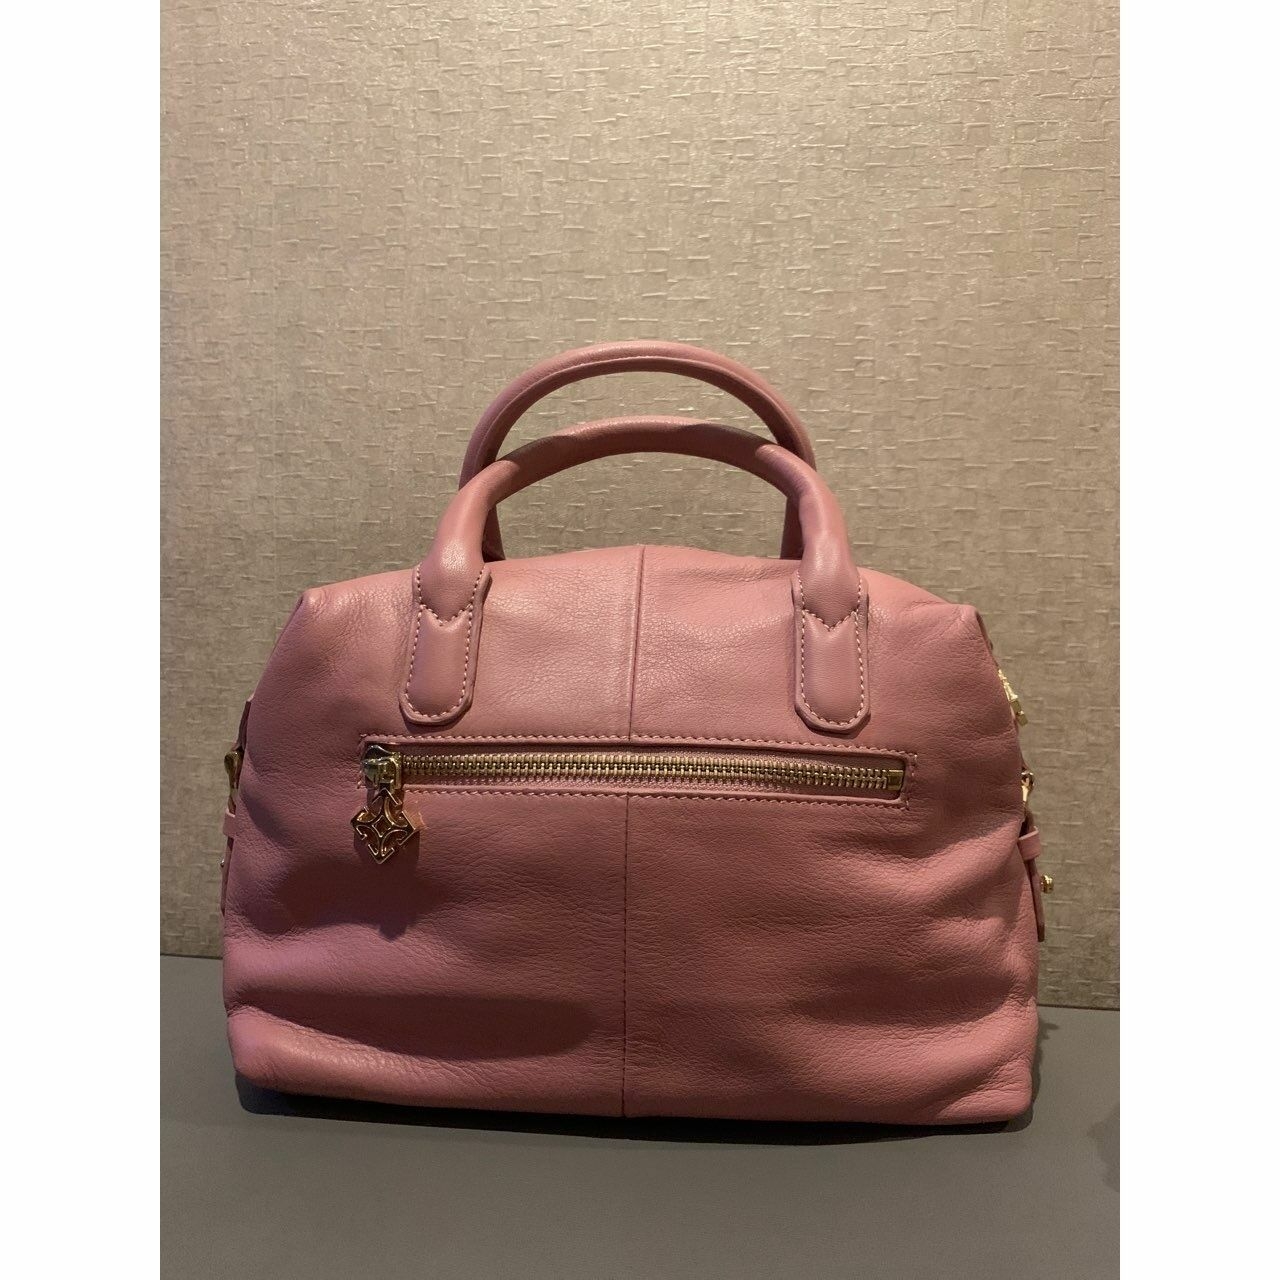 Gobelini Pink Handbag